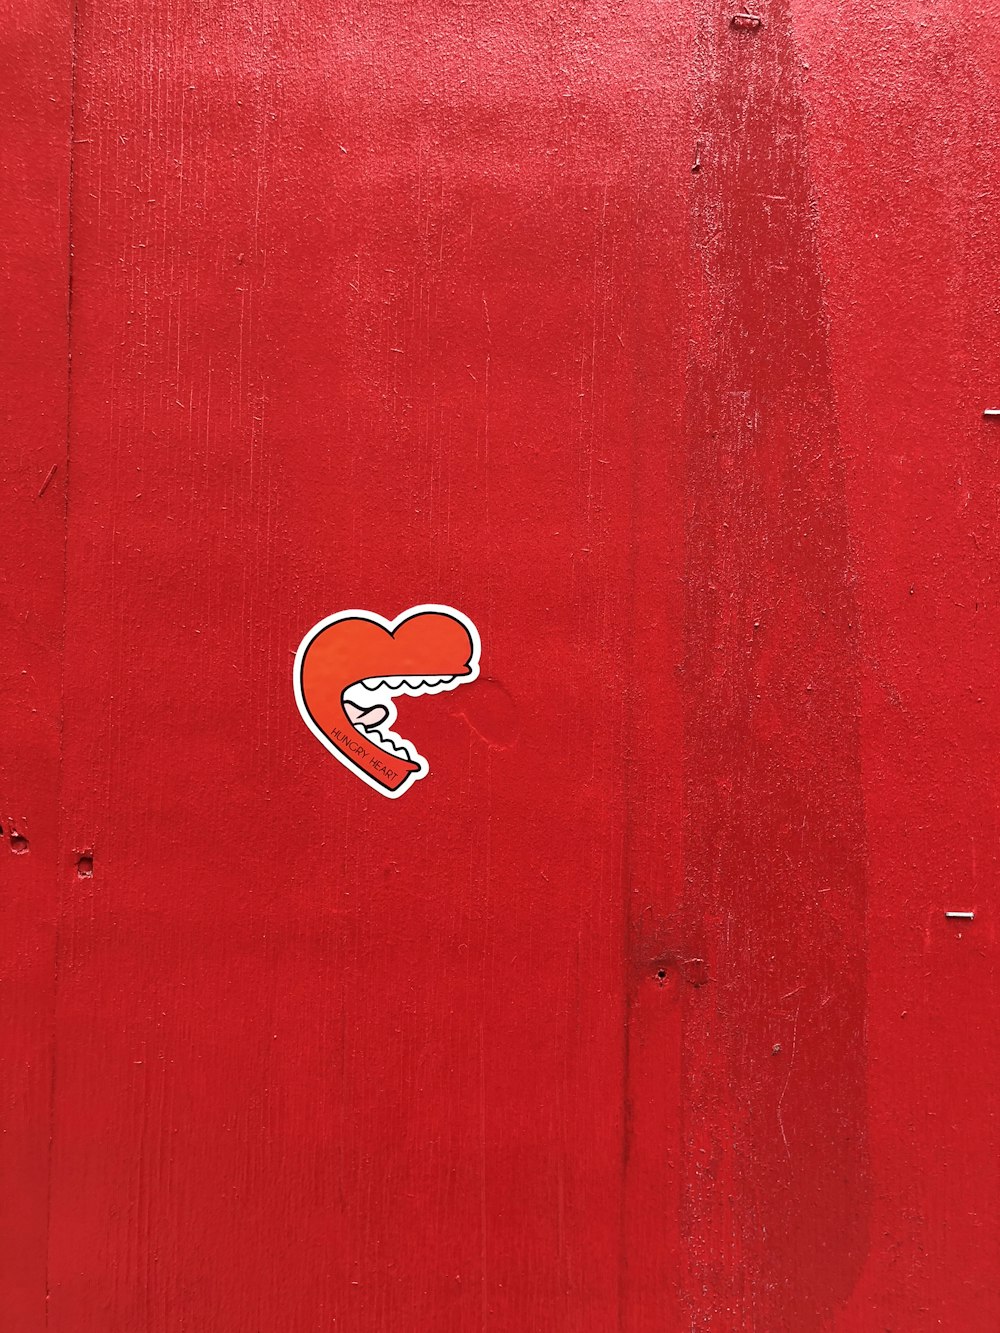 eine rote Wand mit einem Aufkleber eines Herzens darauf